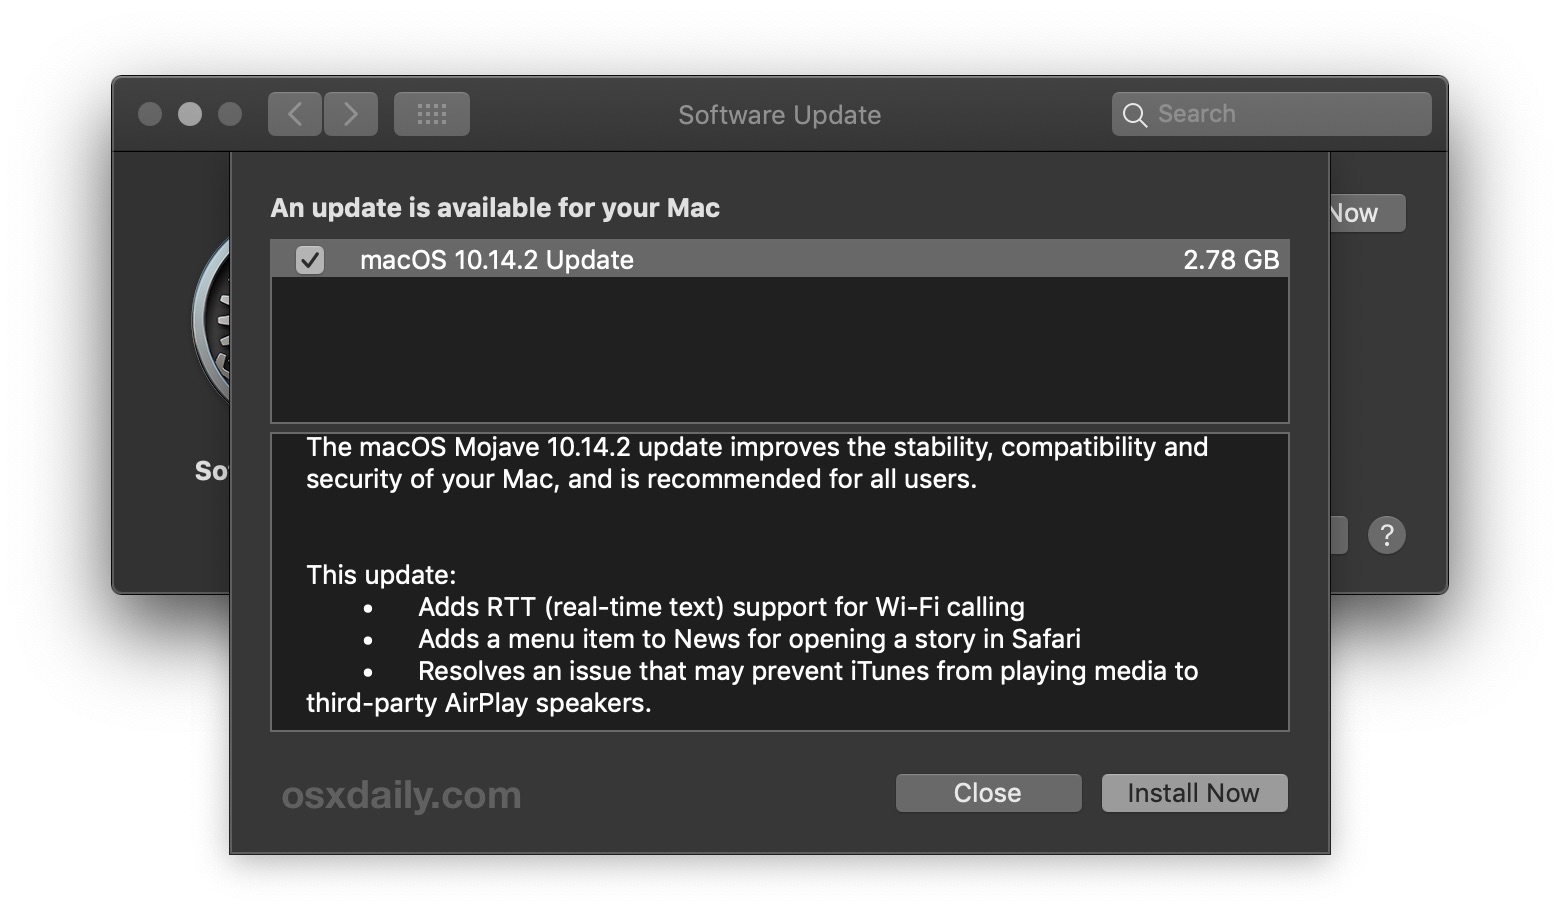 safari download for mac 10.14 mojave